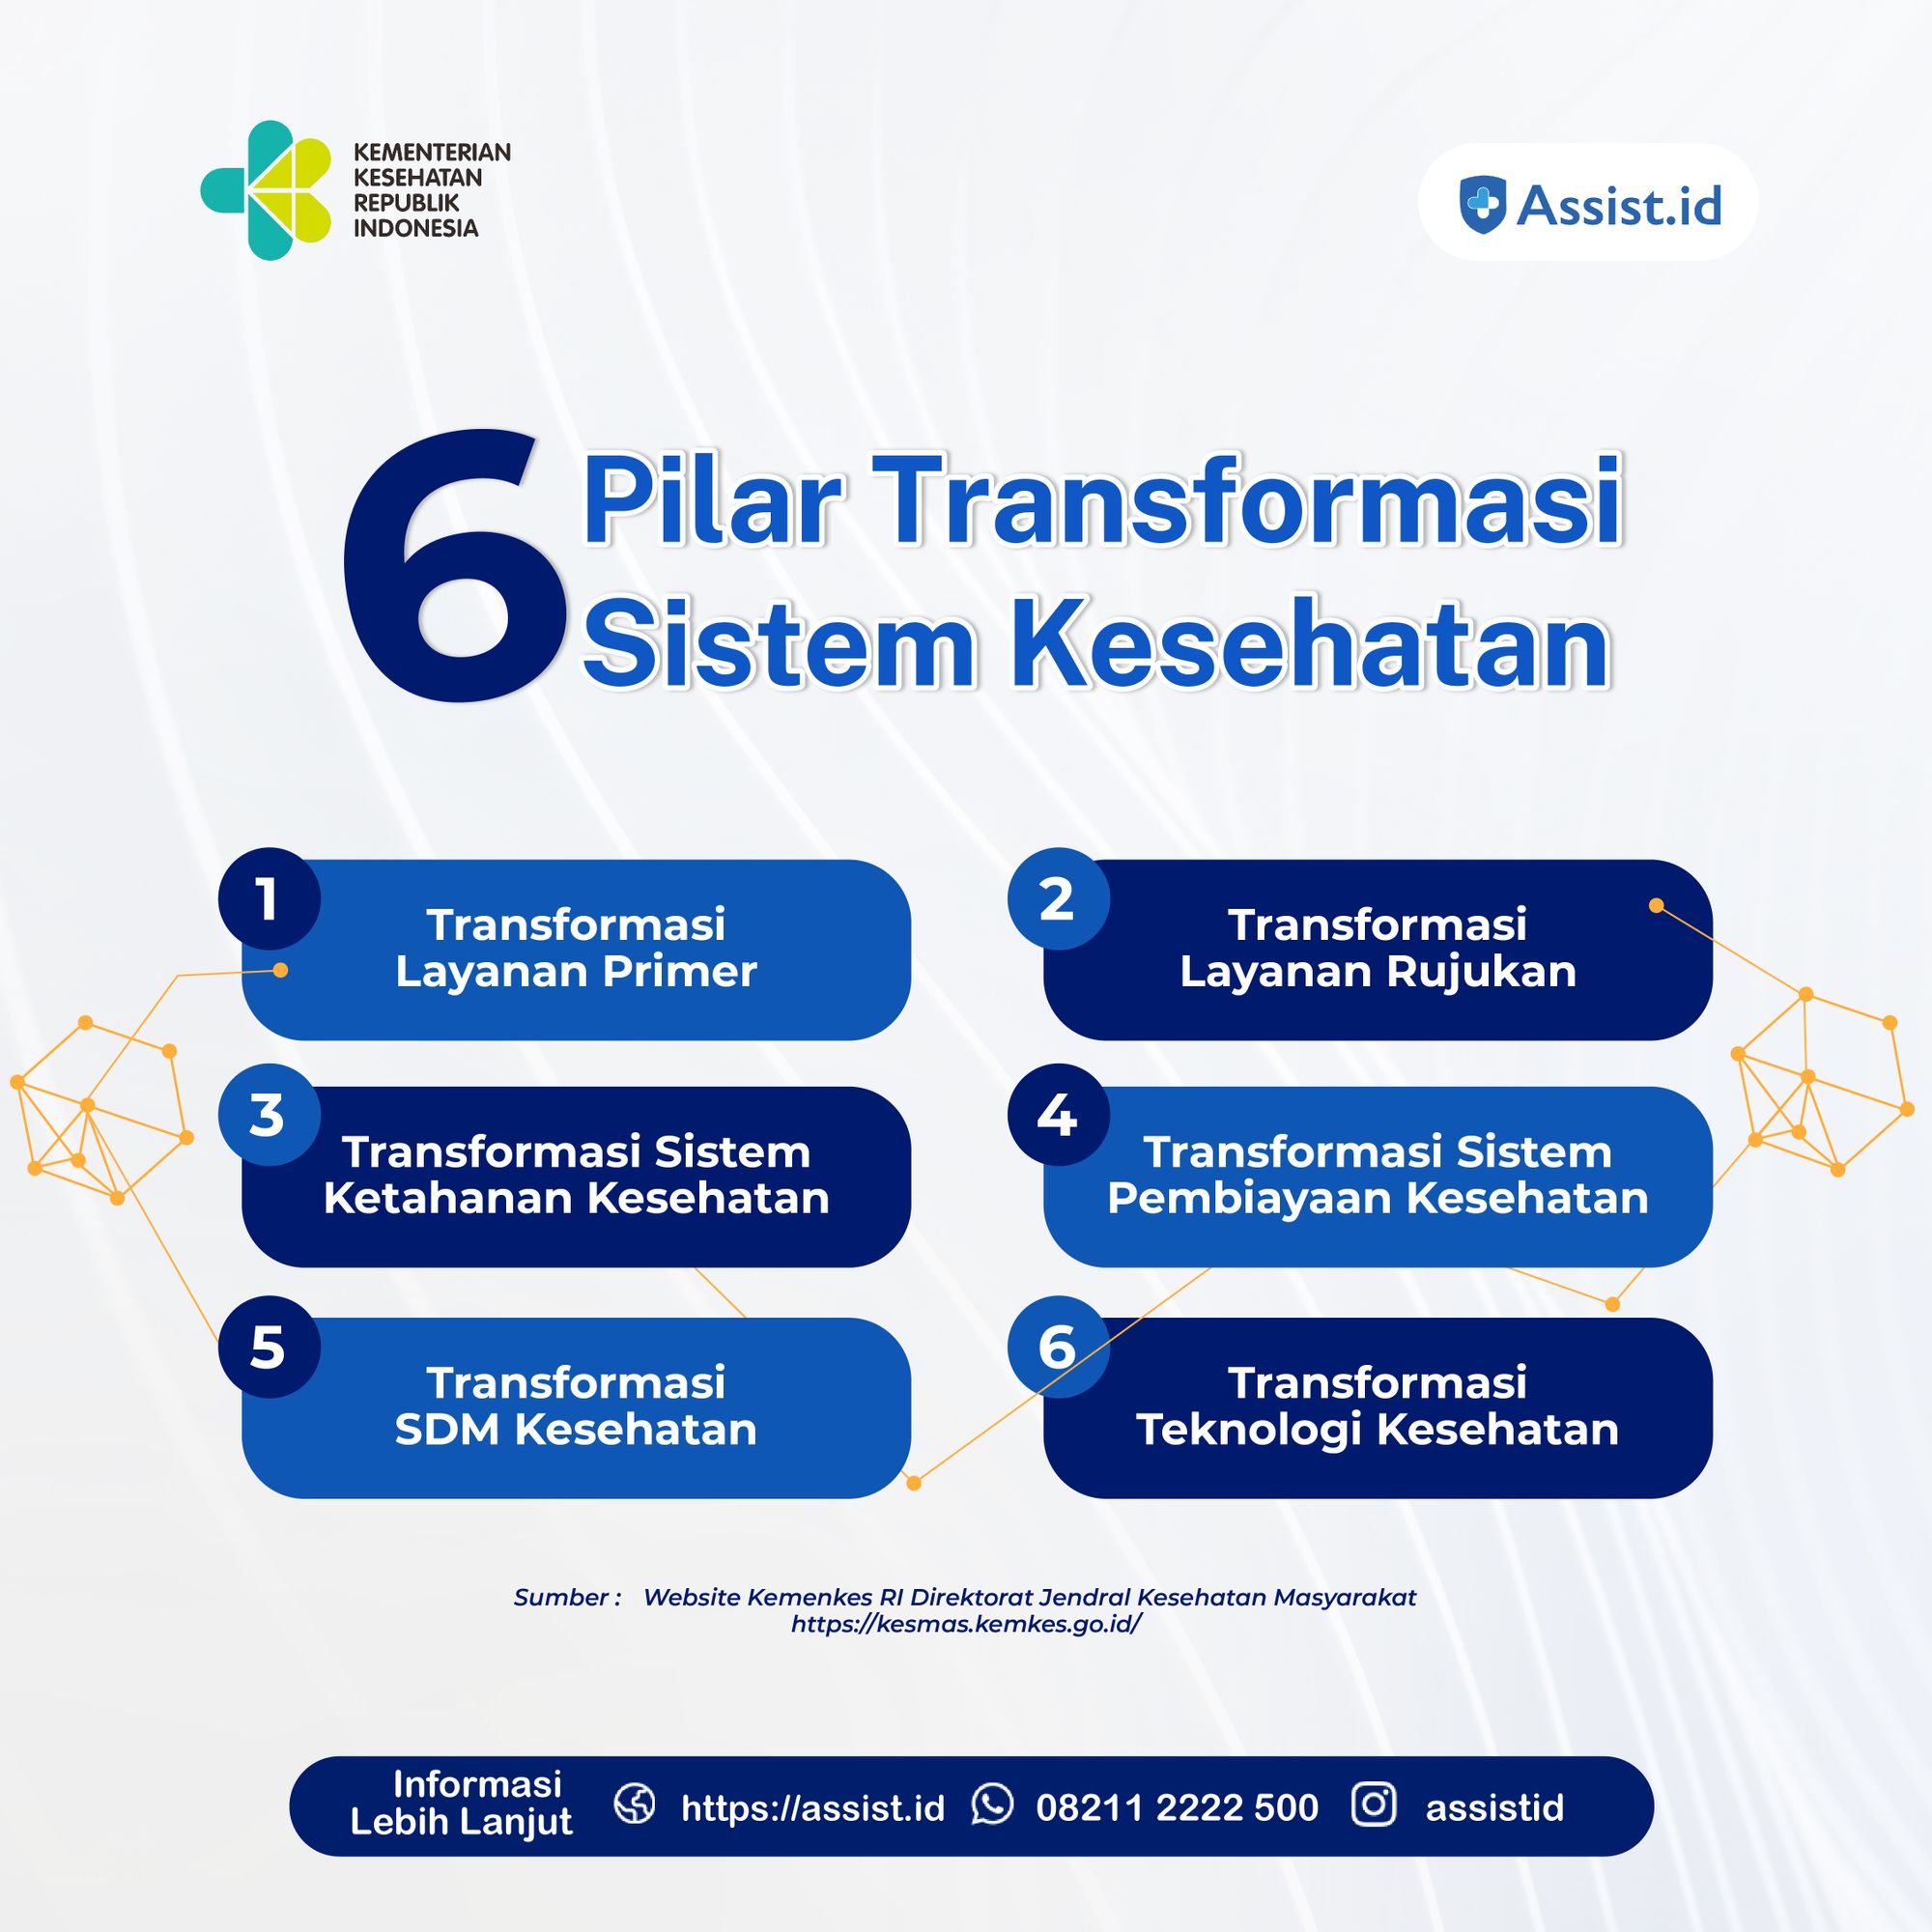 Assistid Dukung Implementasi 6 Pilar Transformasi Sistem Kesehatan